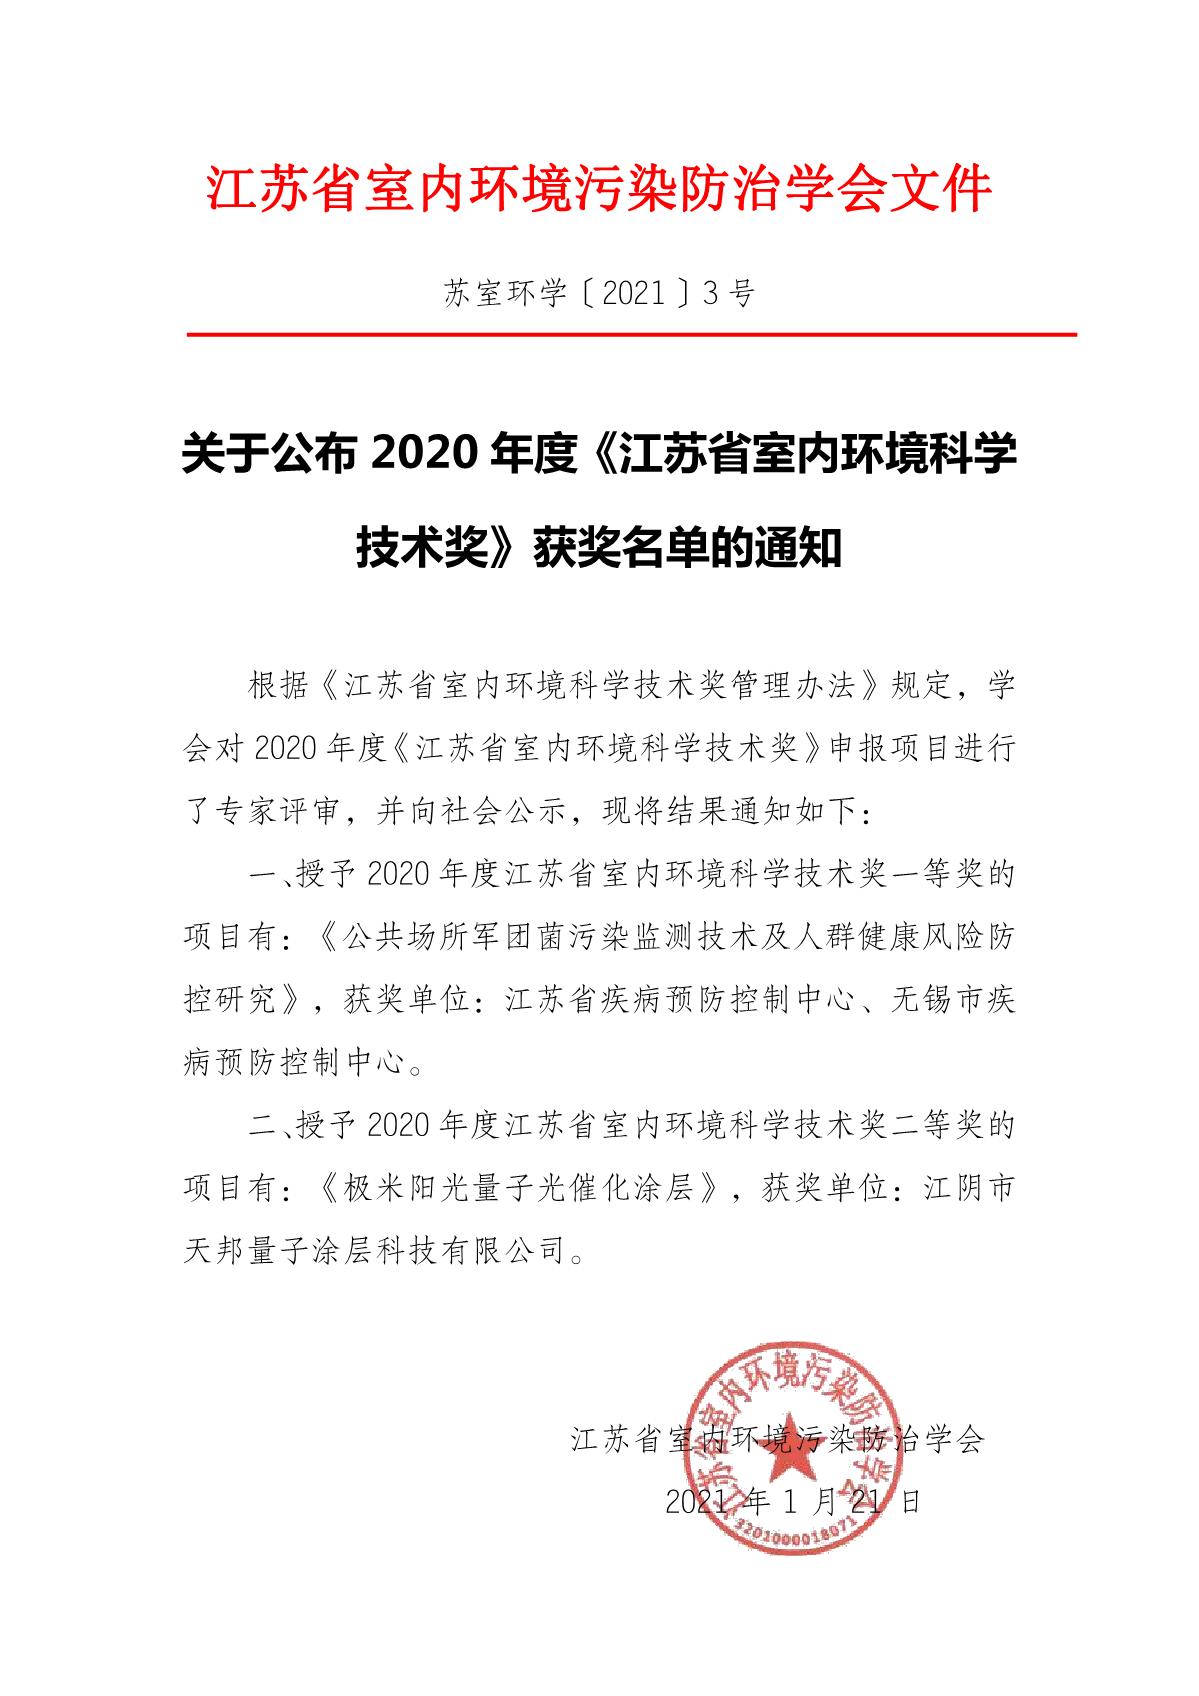 3-关于公布2020年度《江苏省室内环境科学技术奖》获奖名单的通知_1.JPG